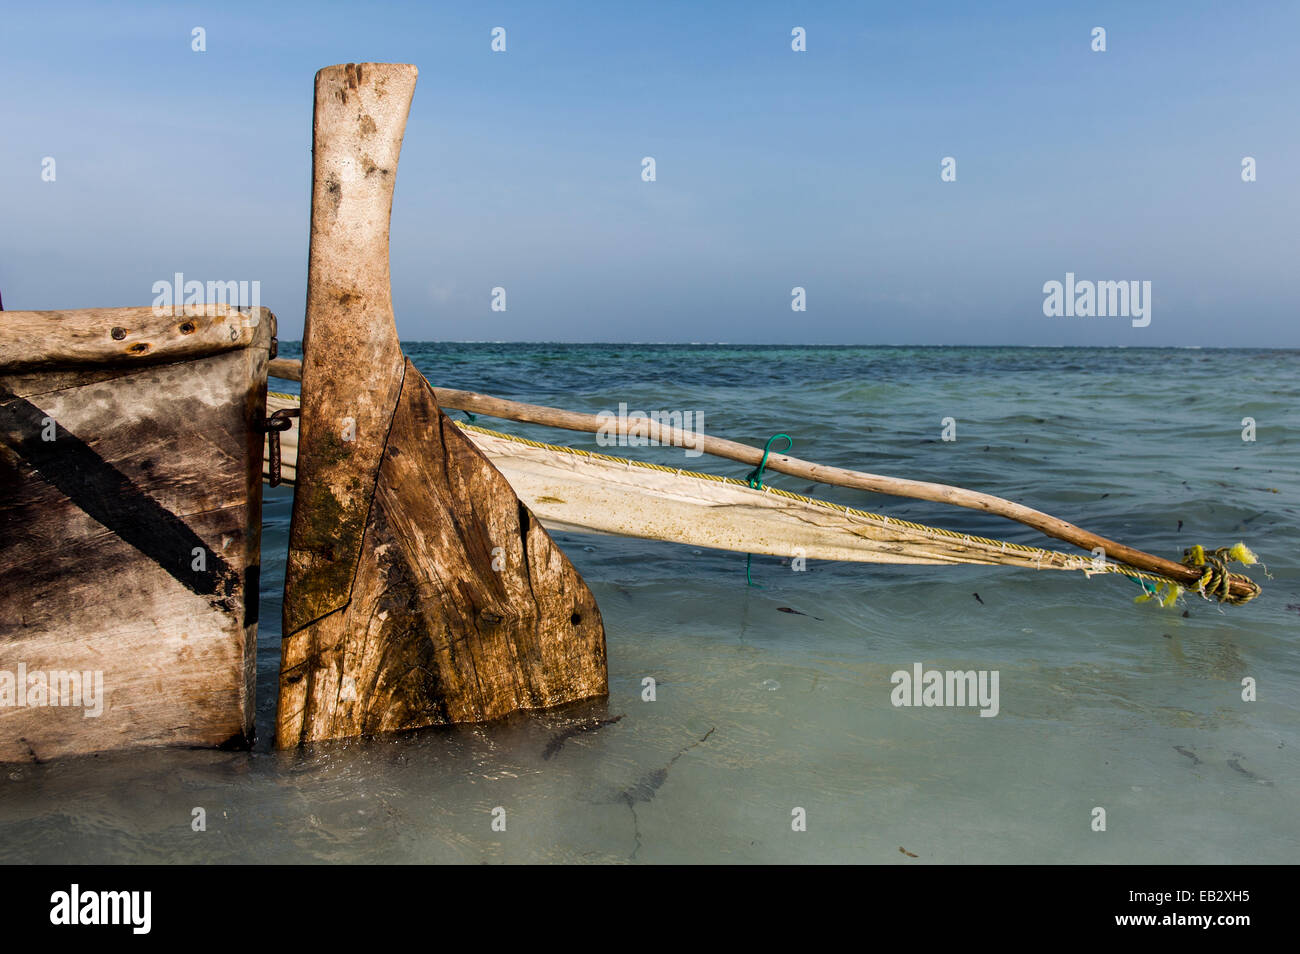 Das geschnitzte Holz Ruder, Mast und plane Segel von einer hölzernen Trimaran Angeln Dhau vor Anker im seichten Wasser. Stockfoto